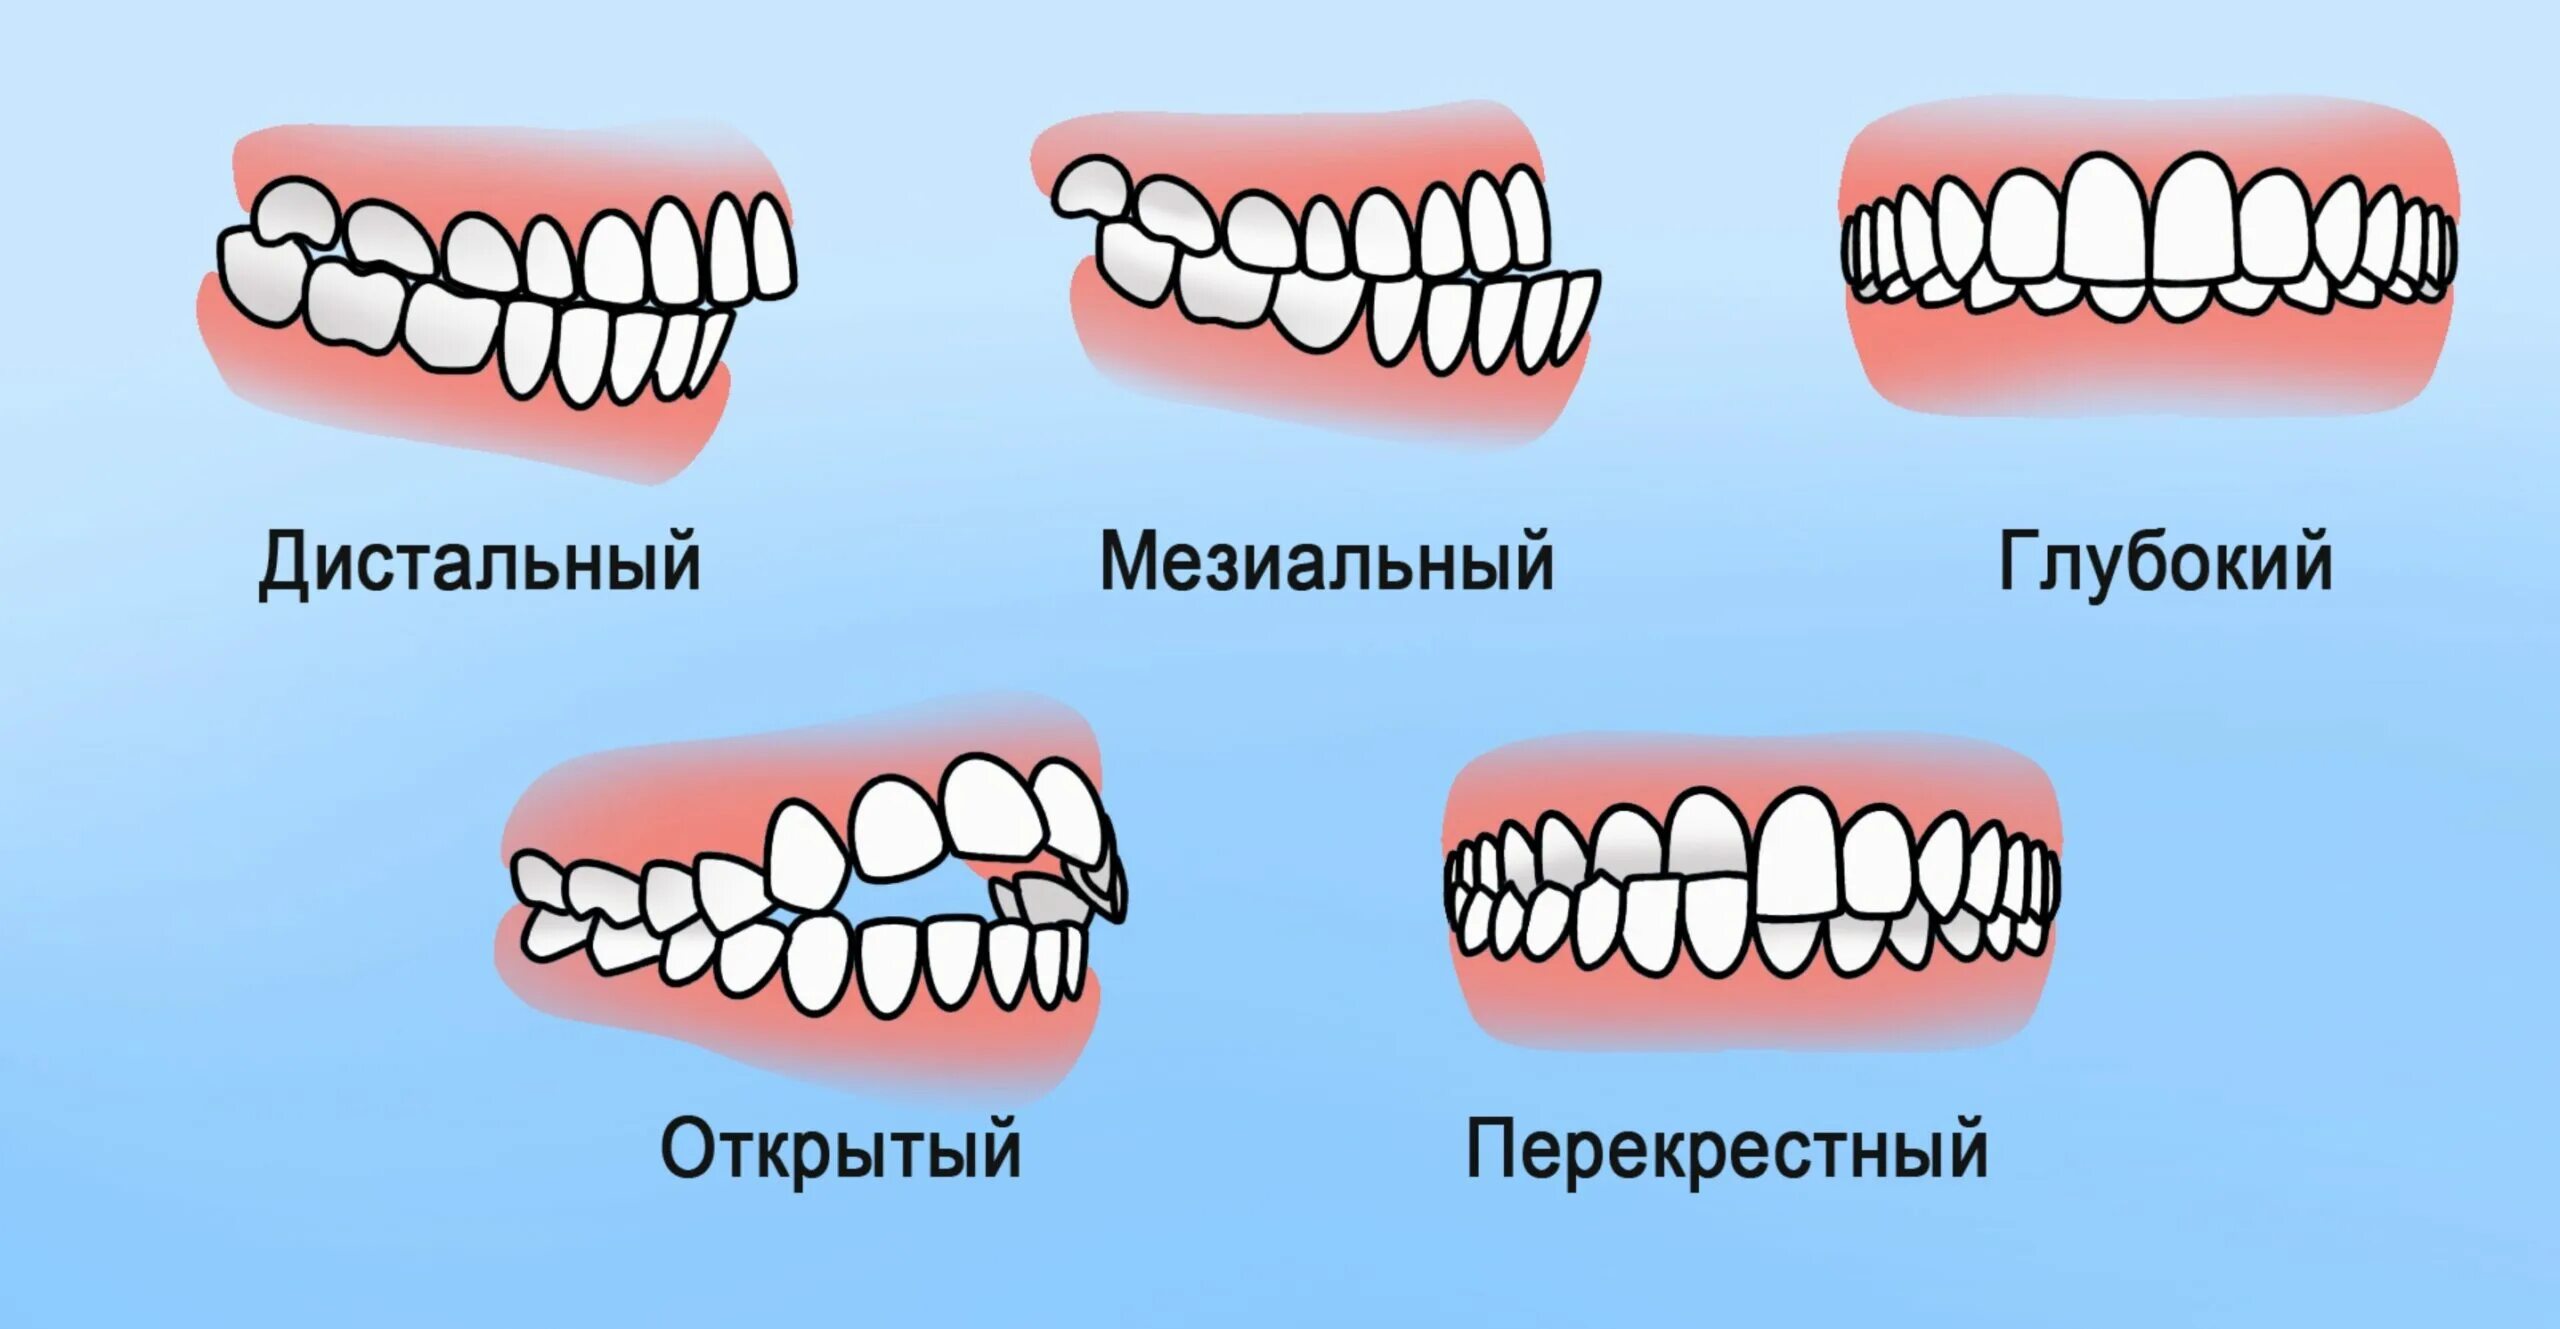 Почему зубы отличаются между собой у разных. Правильный и неправильный прикус и челюсть. Правильный прикус зубов у человека. Правильный прикус зубов у человека и неправильный. Прикус зубов правильный прикус.